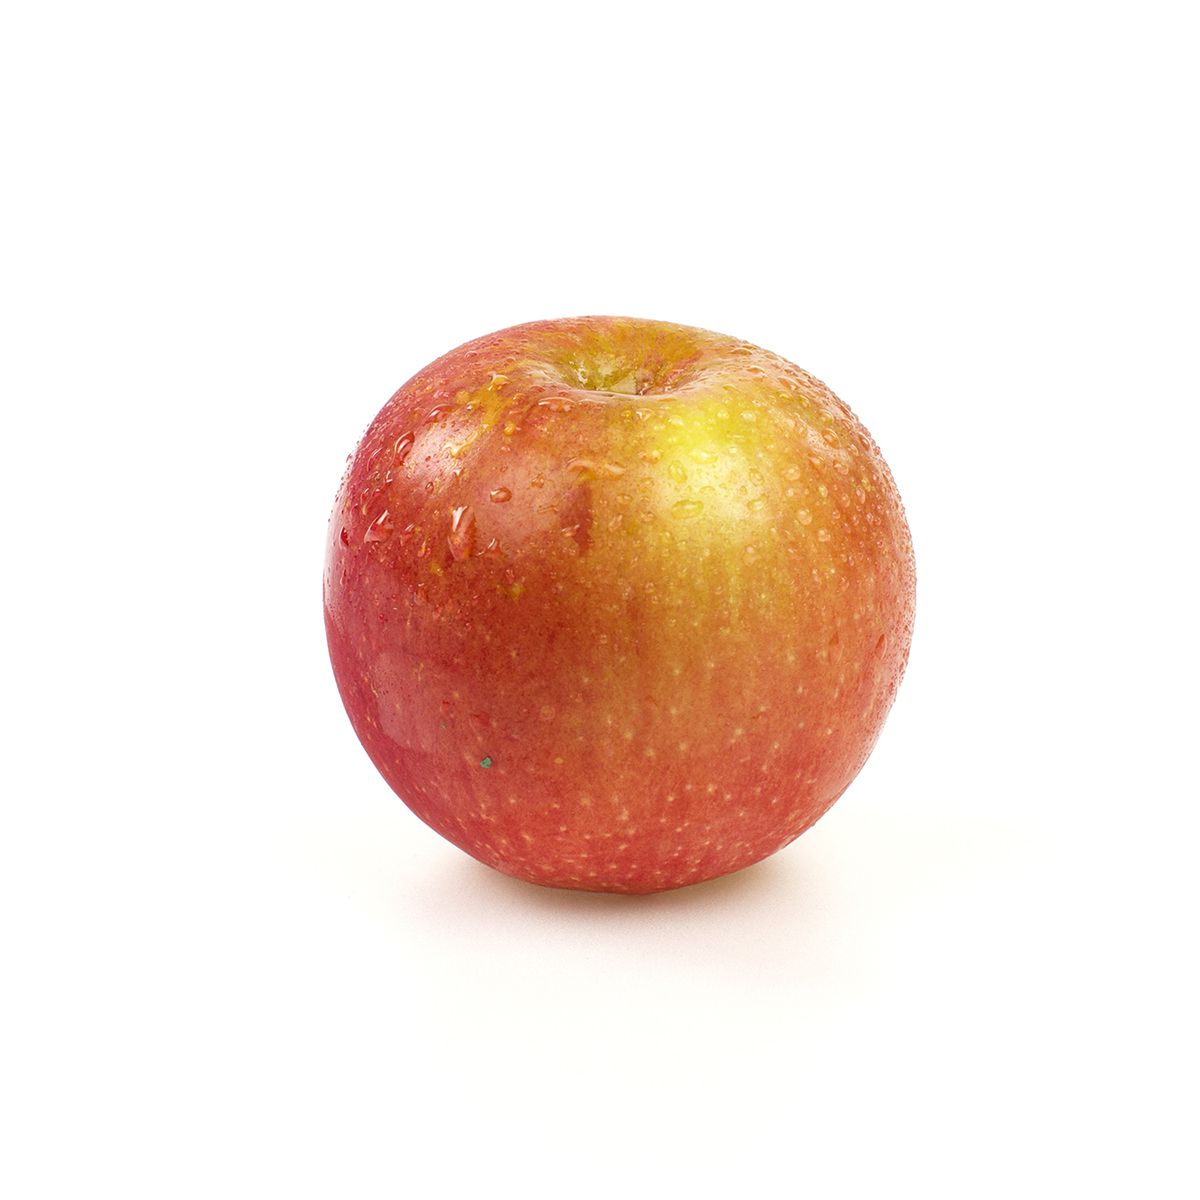 Organic Fuji Apple